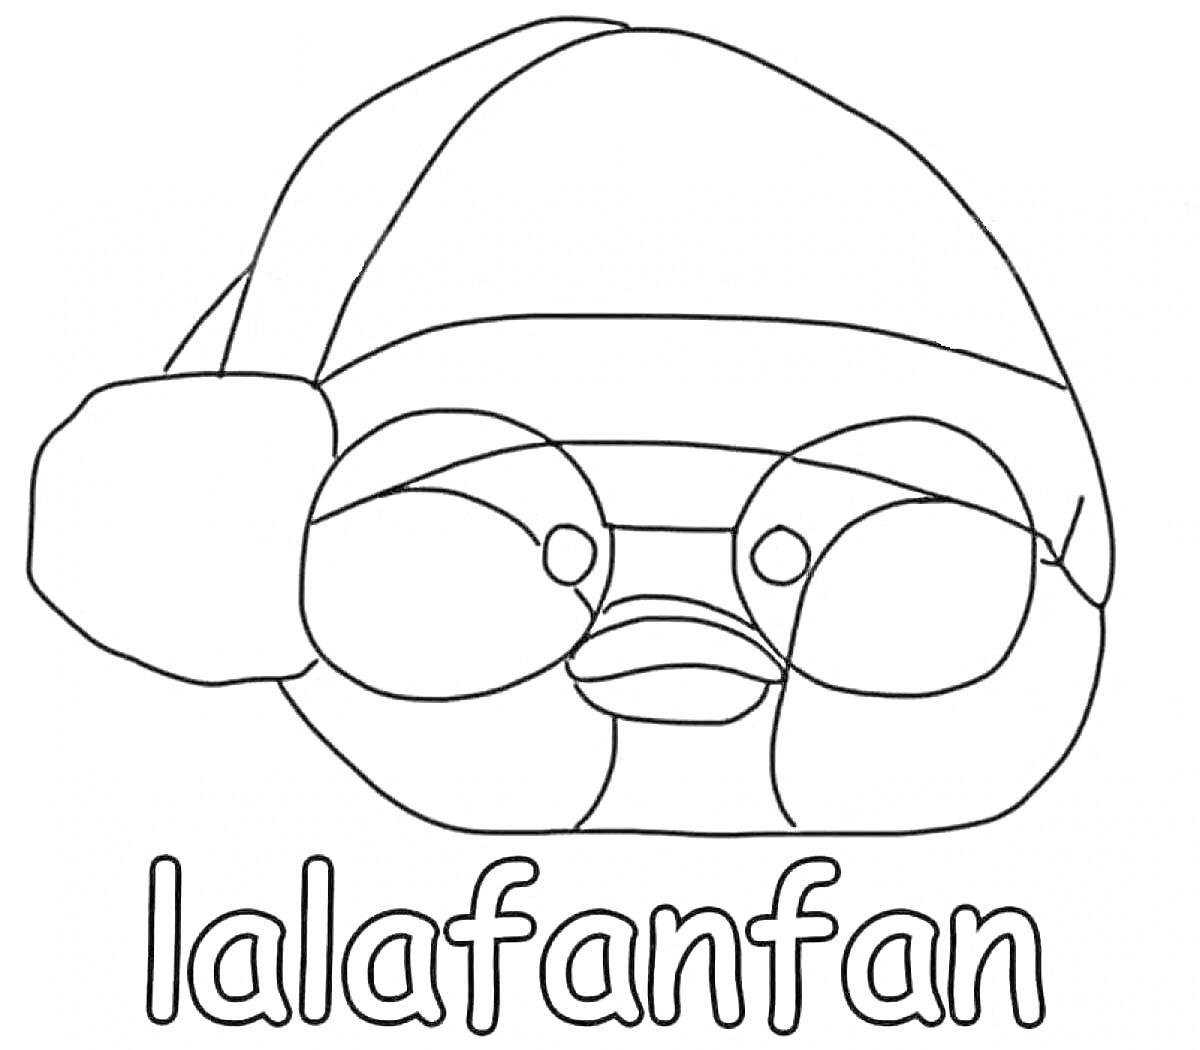 Раскраска Утя лалафан в шапке с помпоном с надписью 